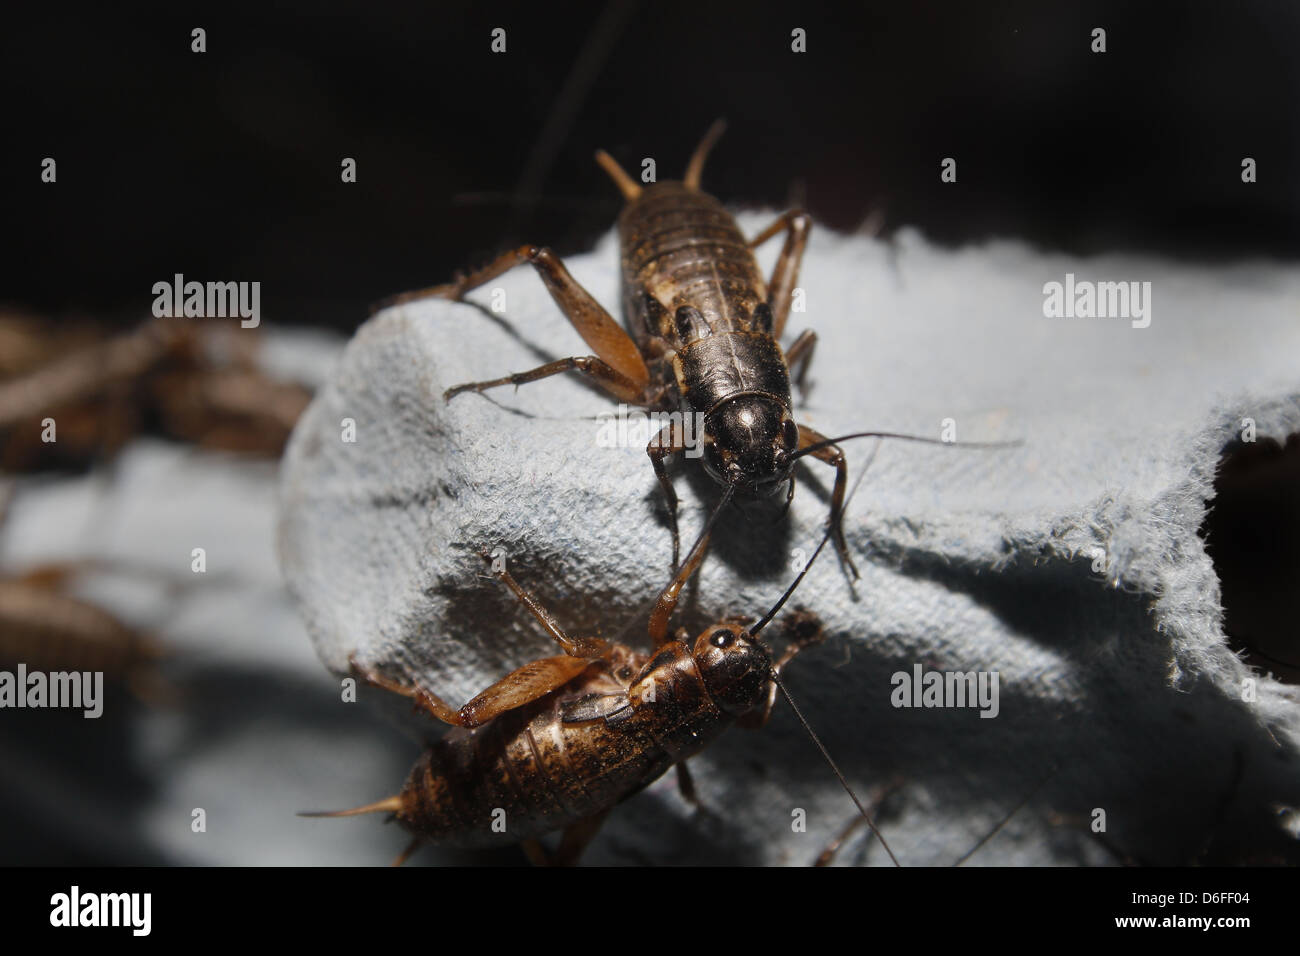 medium sized black crickets on egg boxes Gryllus assimilis Stock Photo